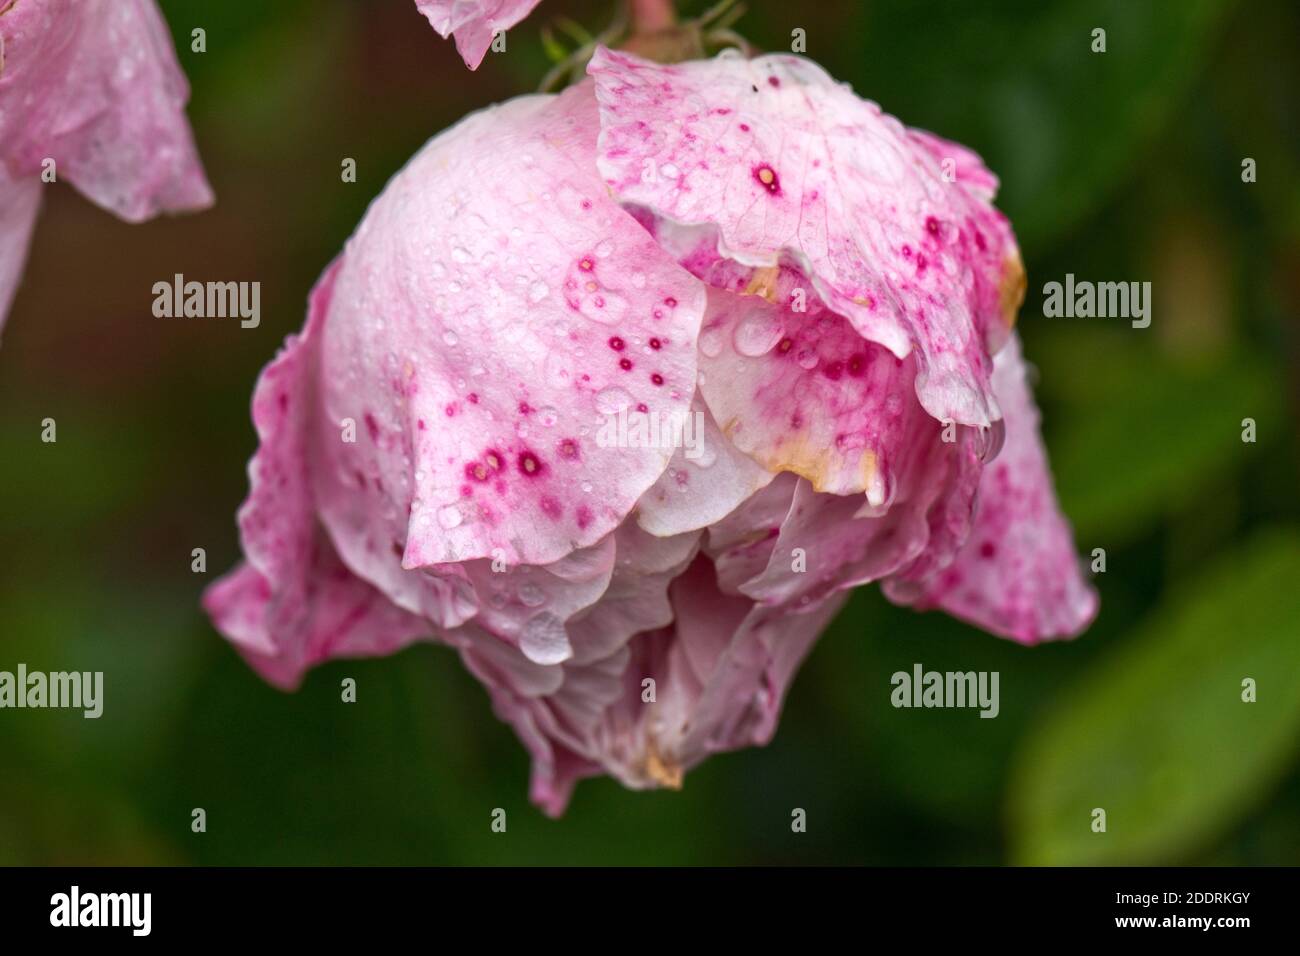 Rosa rosa (Rosa sp.) fiori ricoperti di goccioline di pioggia che mostrano i segni precoci e avanzanti di muffa grigia (Botrytis cinerea) spotting, giugno Foto Stock